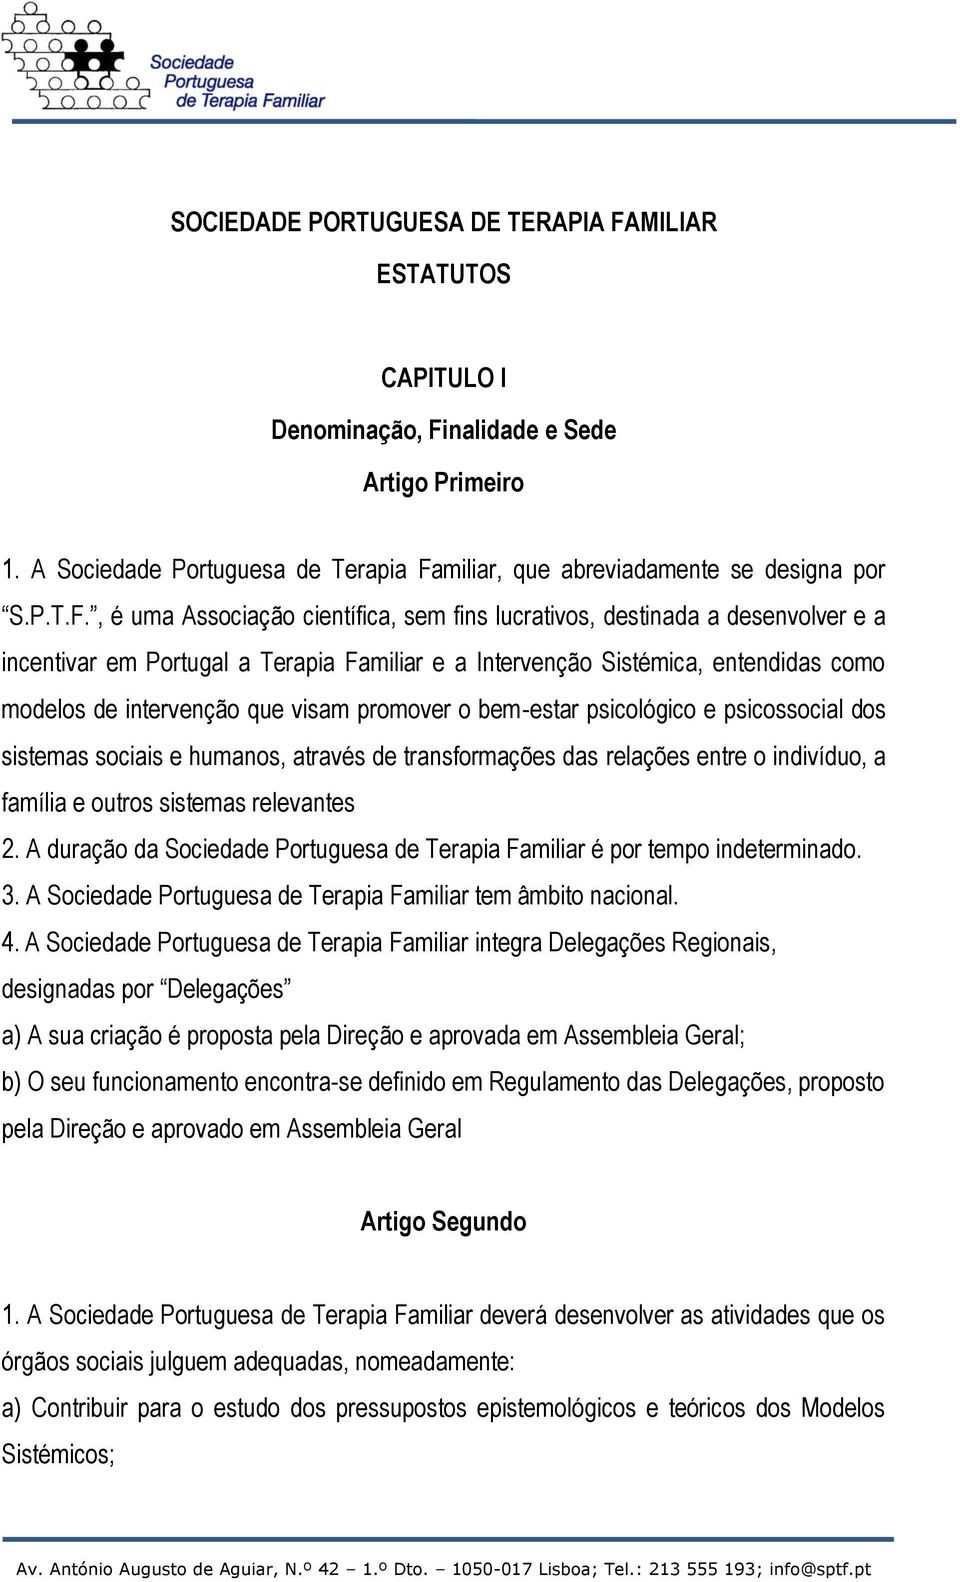 nalidade e Sede Artigo Primeiro 1. A Sociedade Portuguesa de Terapia Fa